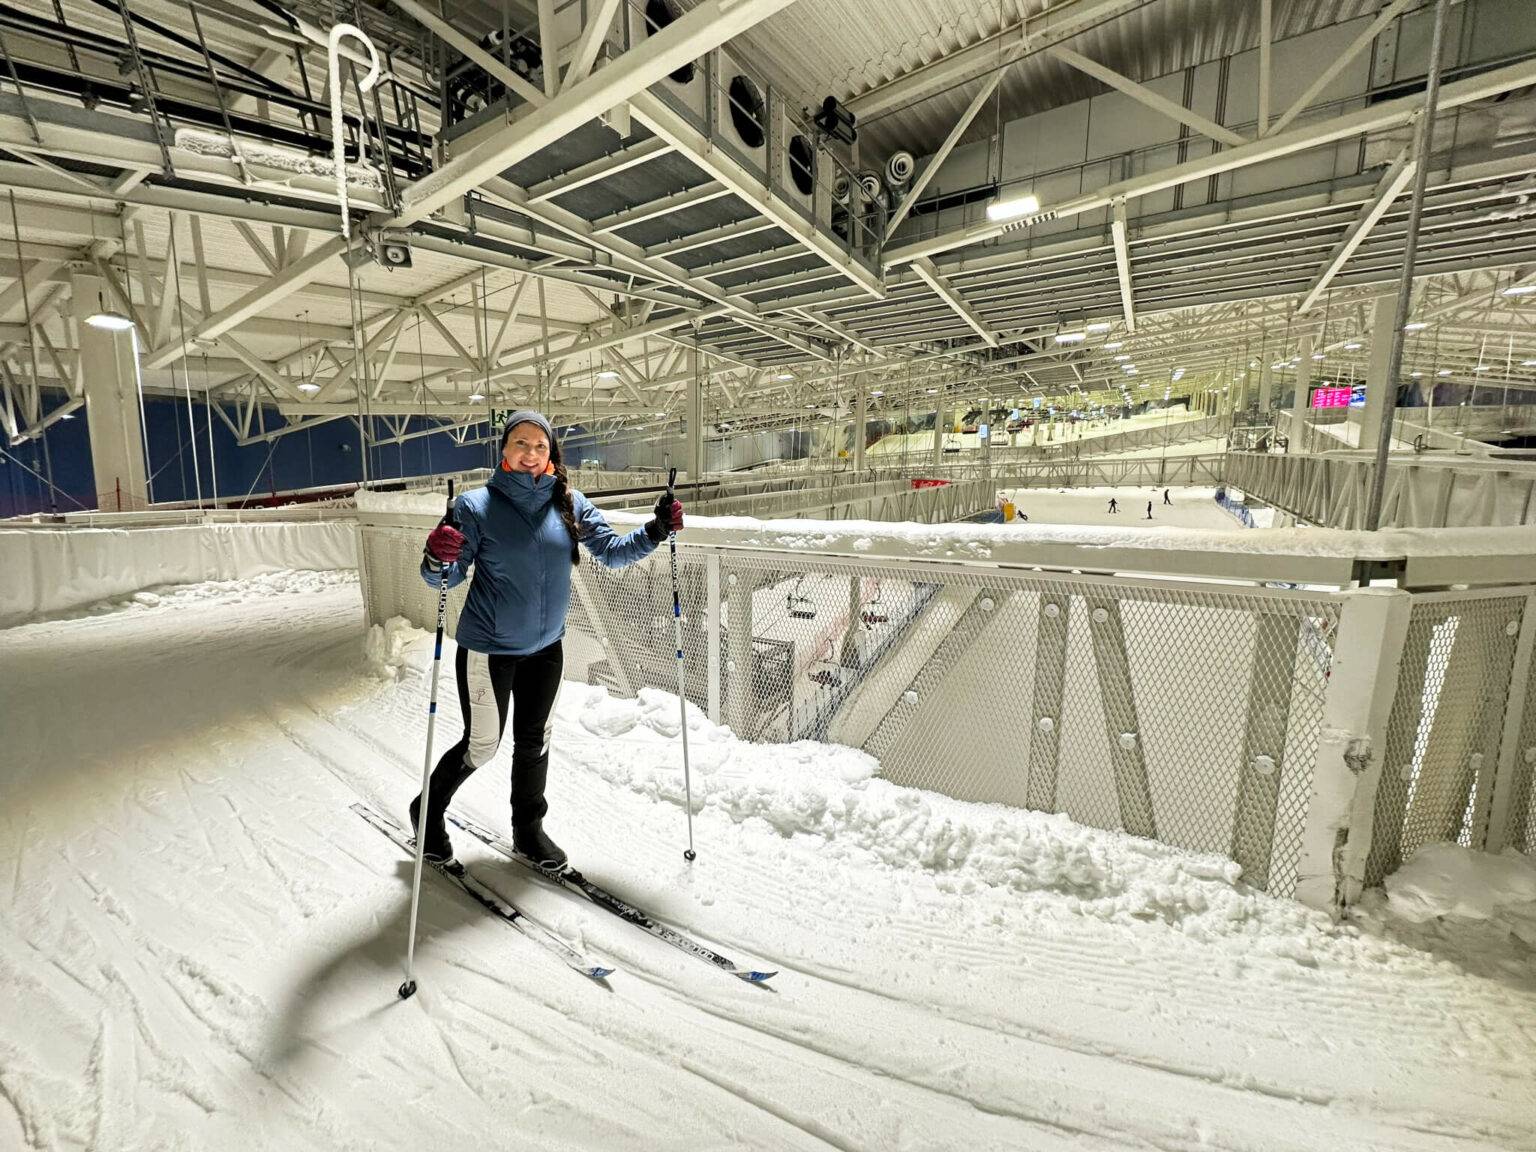 In der Skihalle SNØ kannst du Eisklettern, mit Skiern die Piste runterbrettern oder die Langlaufskier anschnallen und deine Runden drehen.  